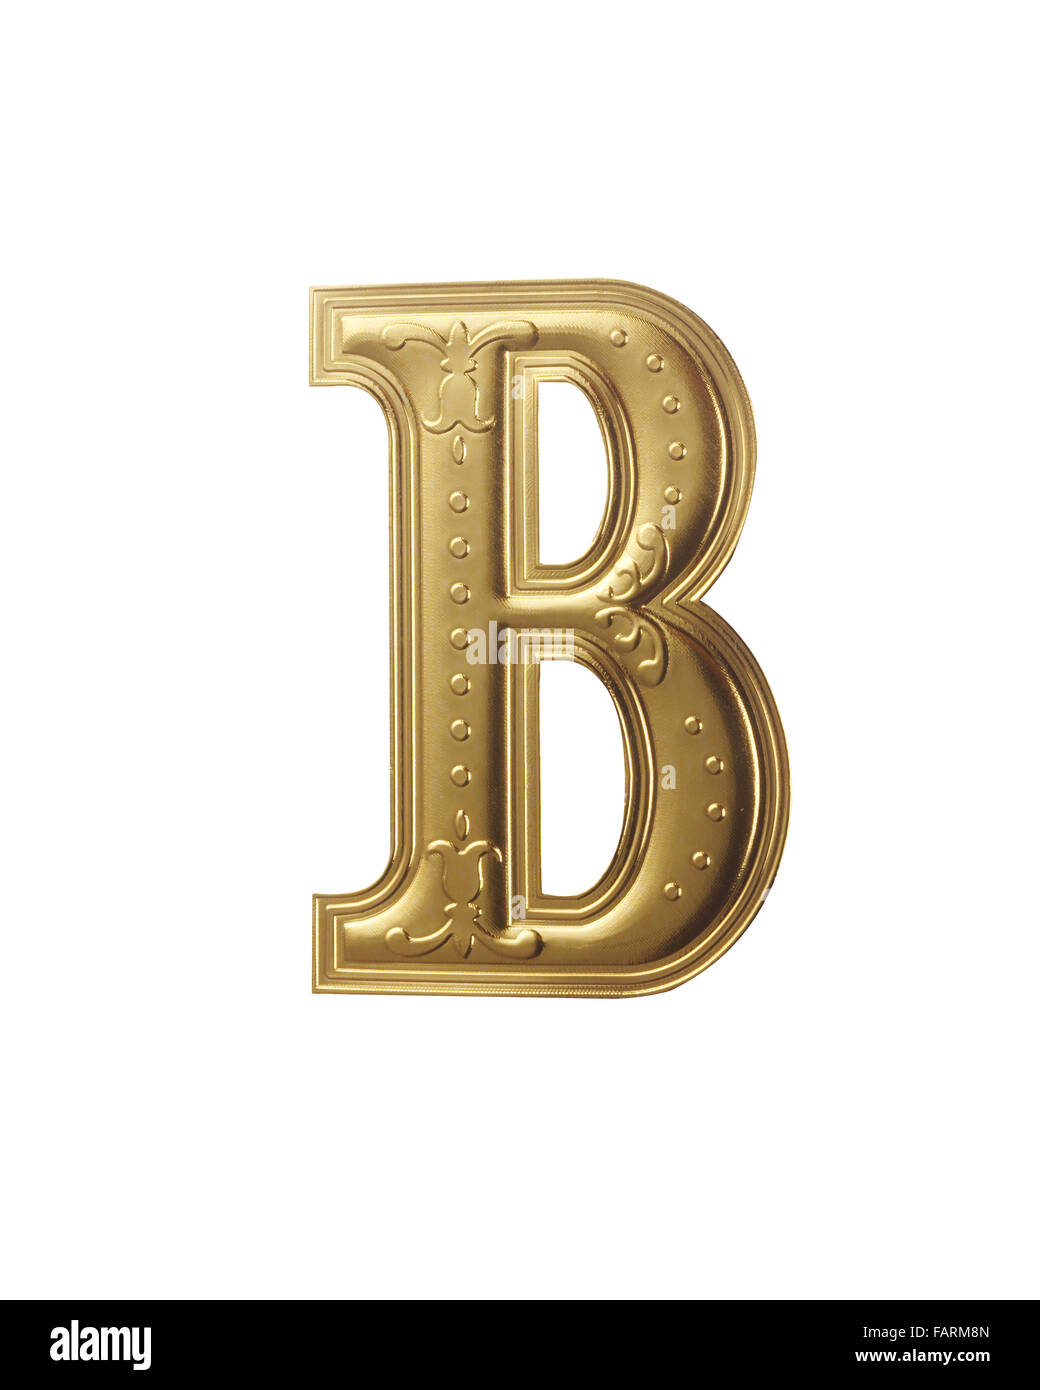 Image de l'alphabet couleur or with clipping path Banque D'Images